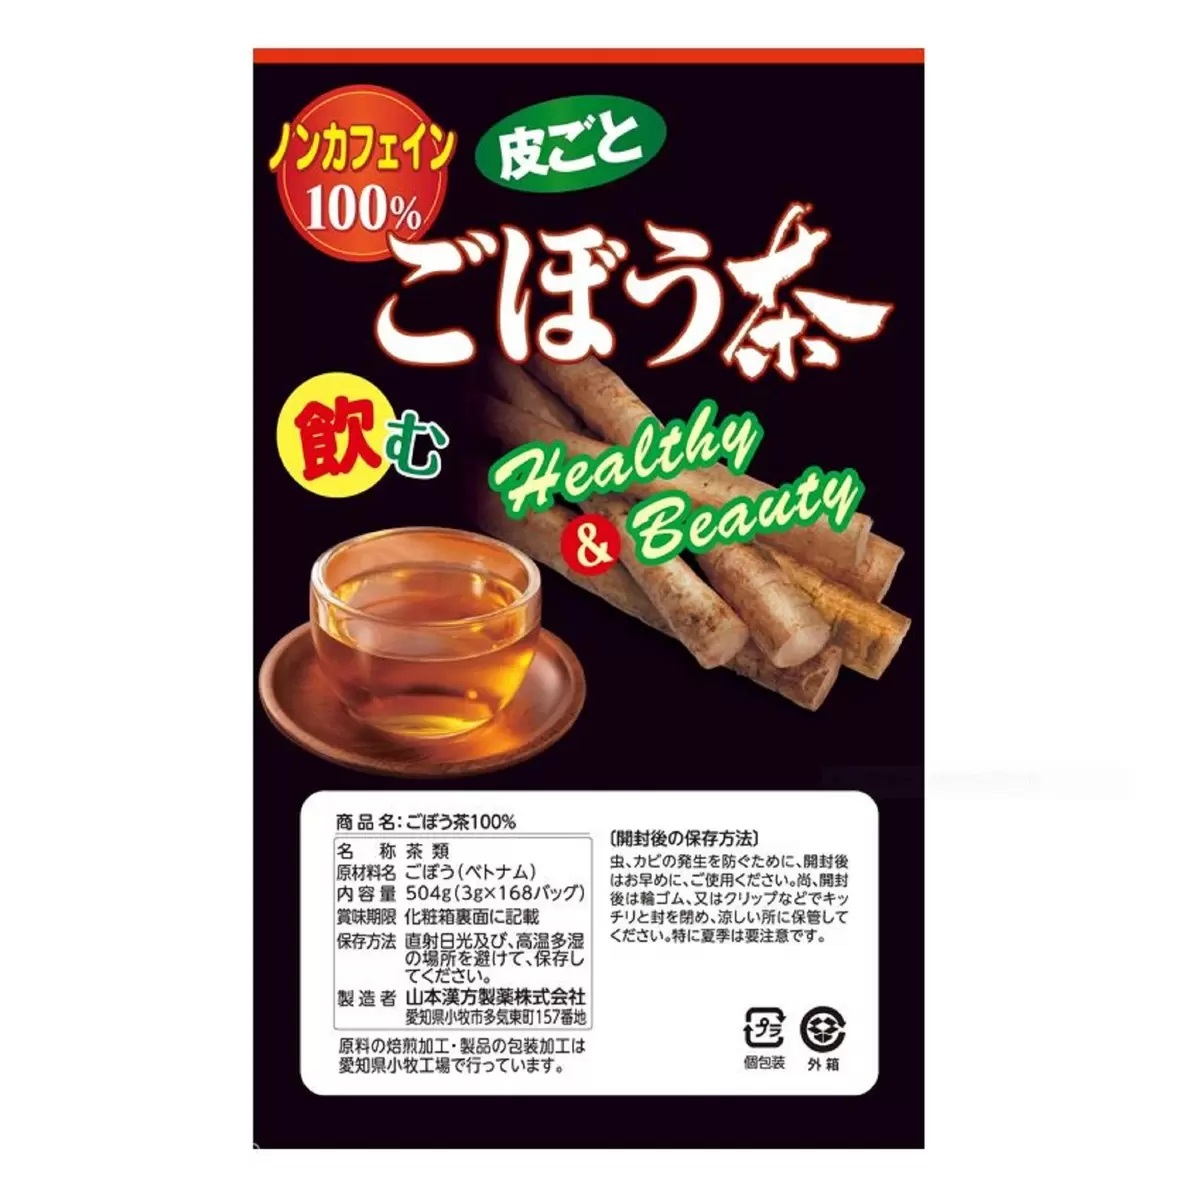 山本漢方 ごぼう茶 Healthy & Beauty 3g x 168 包 ノンカフェイン